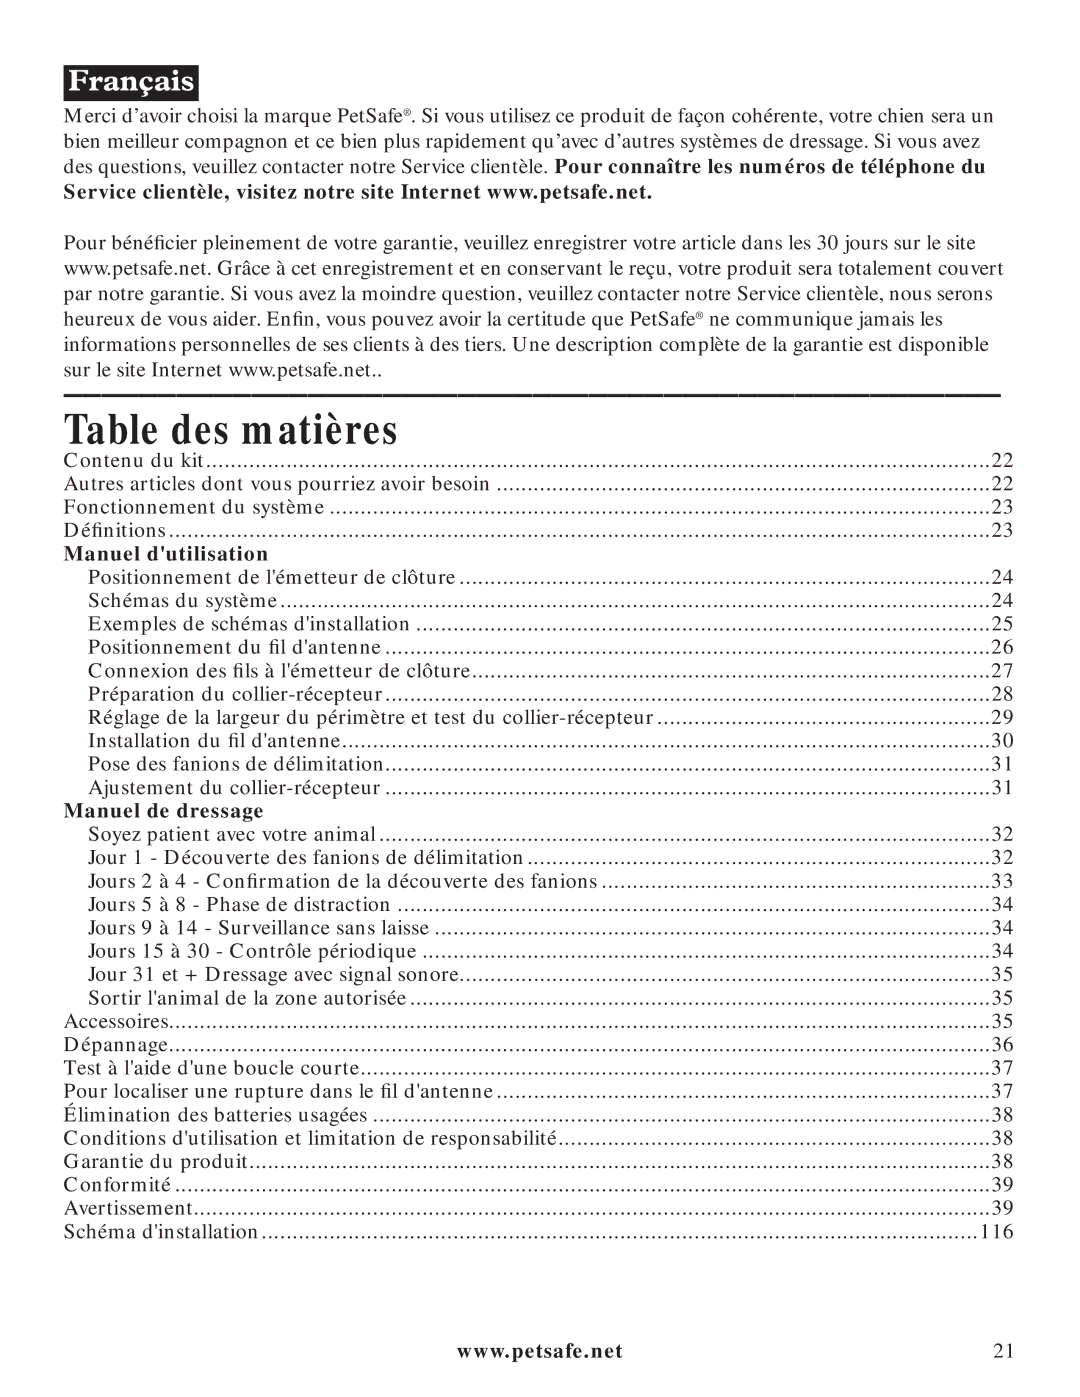 Petsafe PIG20-11041 manuel dutilisation Table des matières, Manuel dutilisation 